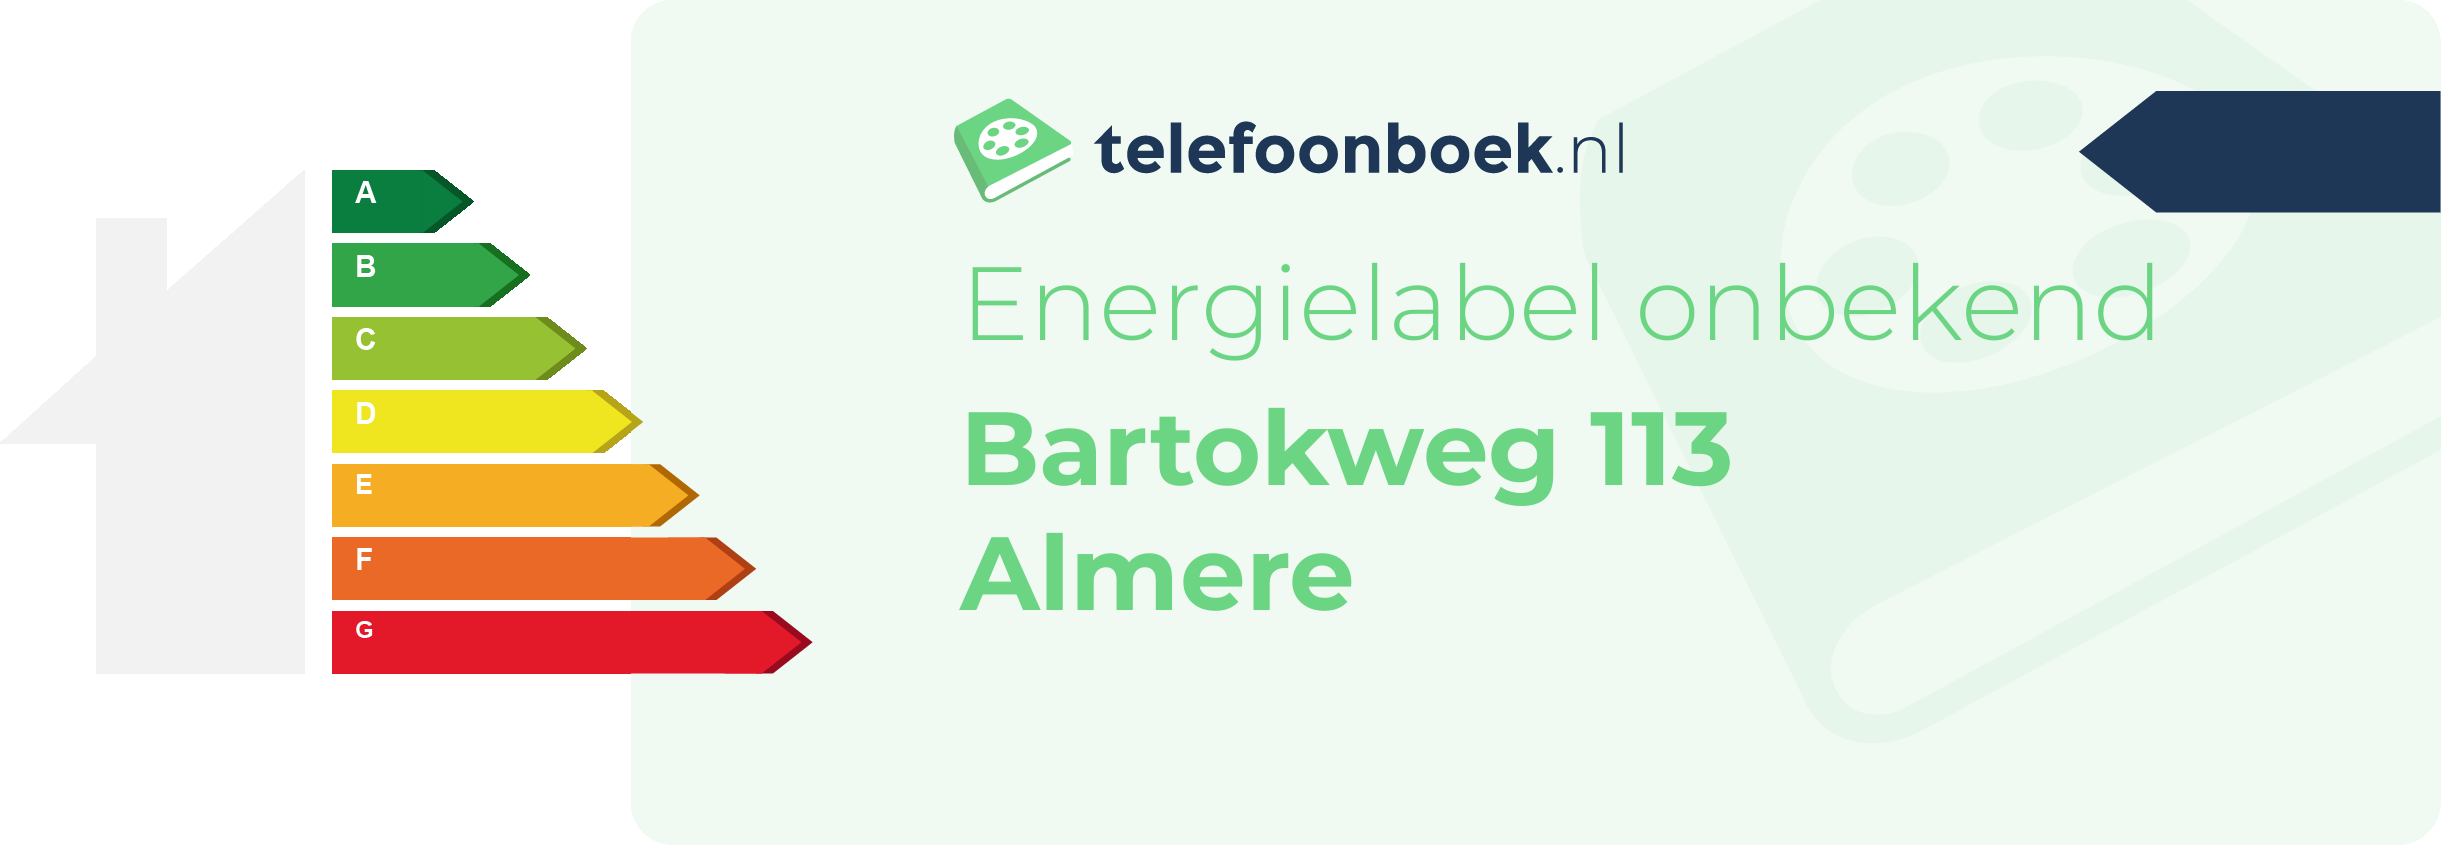 Energielabel Bartokweg 113 Almere